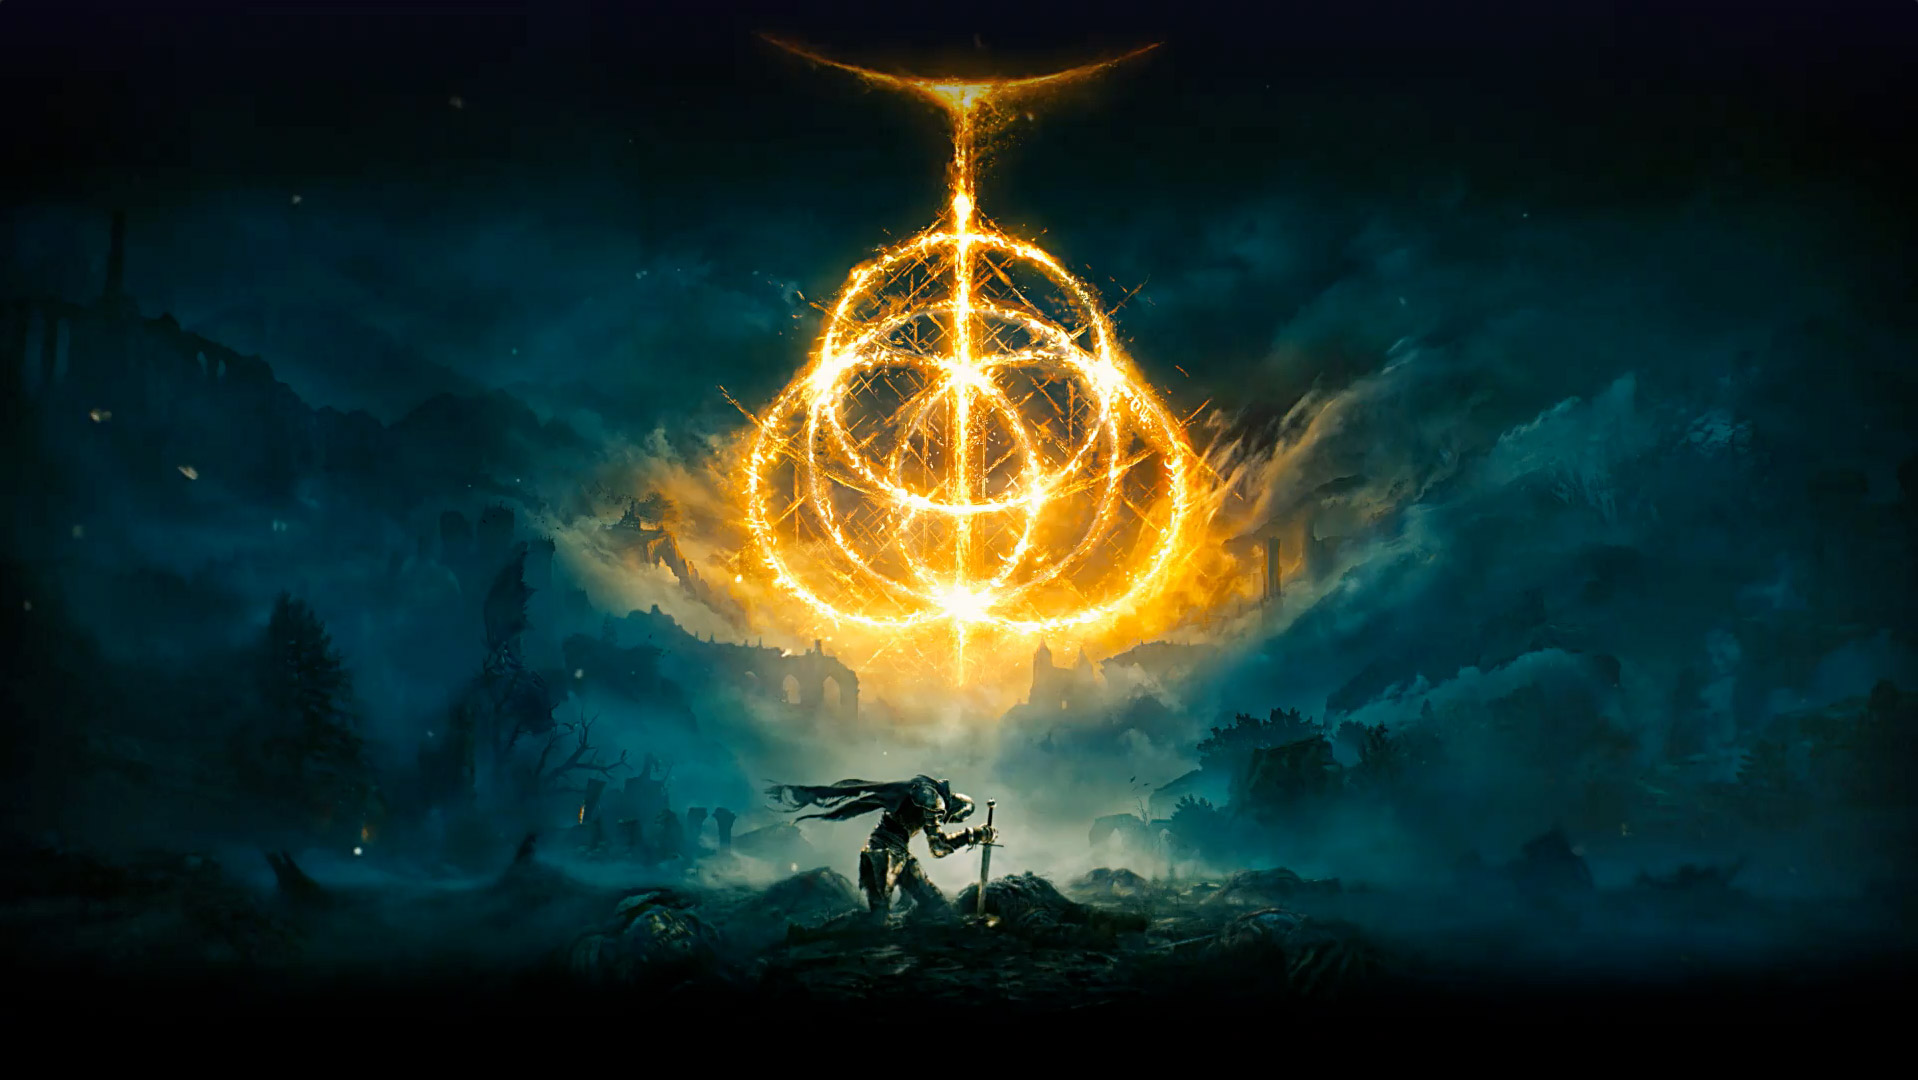 Elden Ring. Meerdere vurige ringen die het Elden Ring-symbool vormen. Een ridderpersonage steekt een zwaard in de grond in een verlaten en mistig gebied.